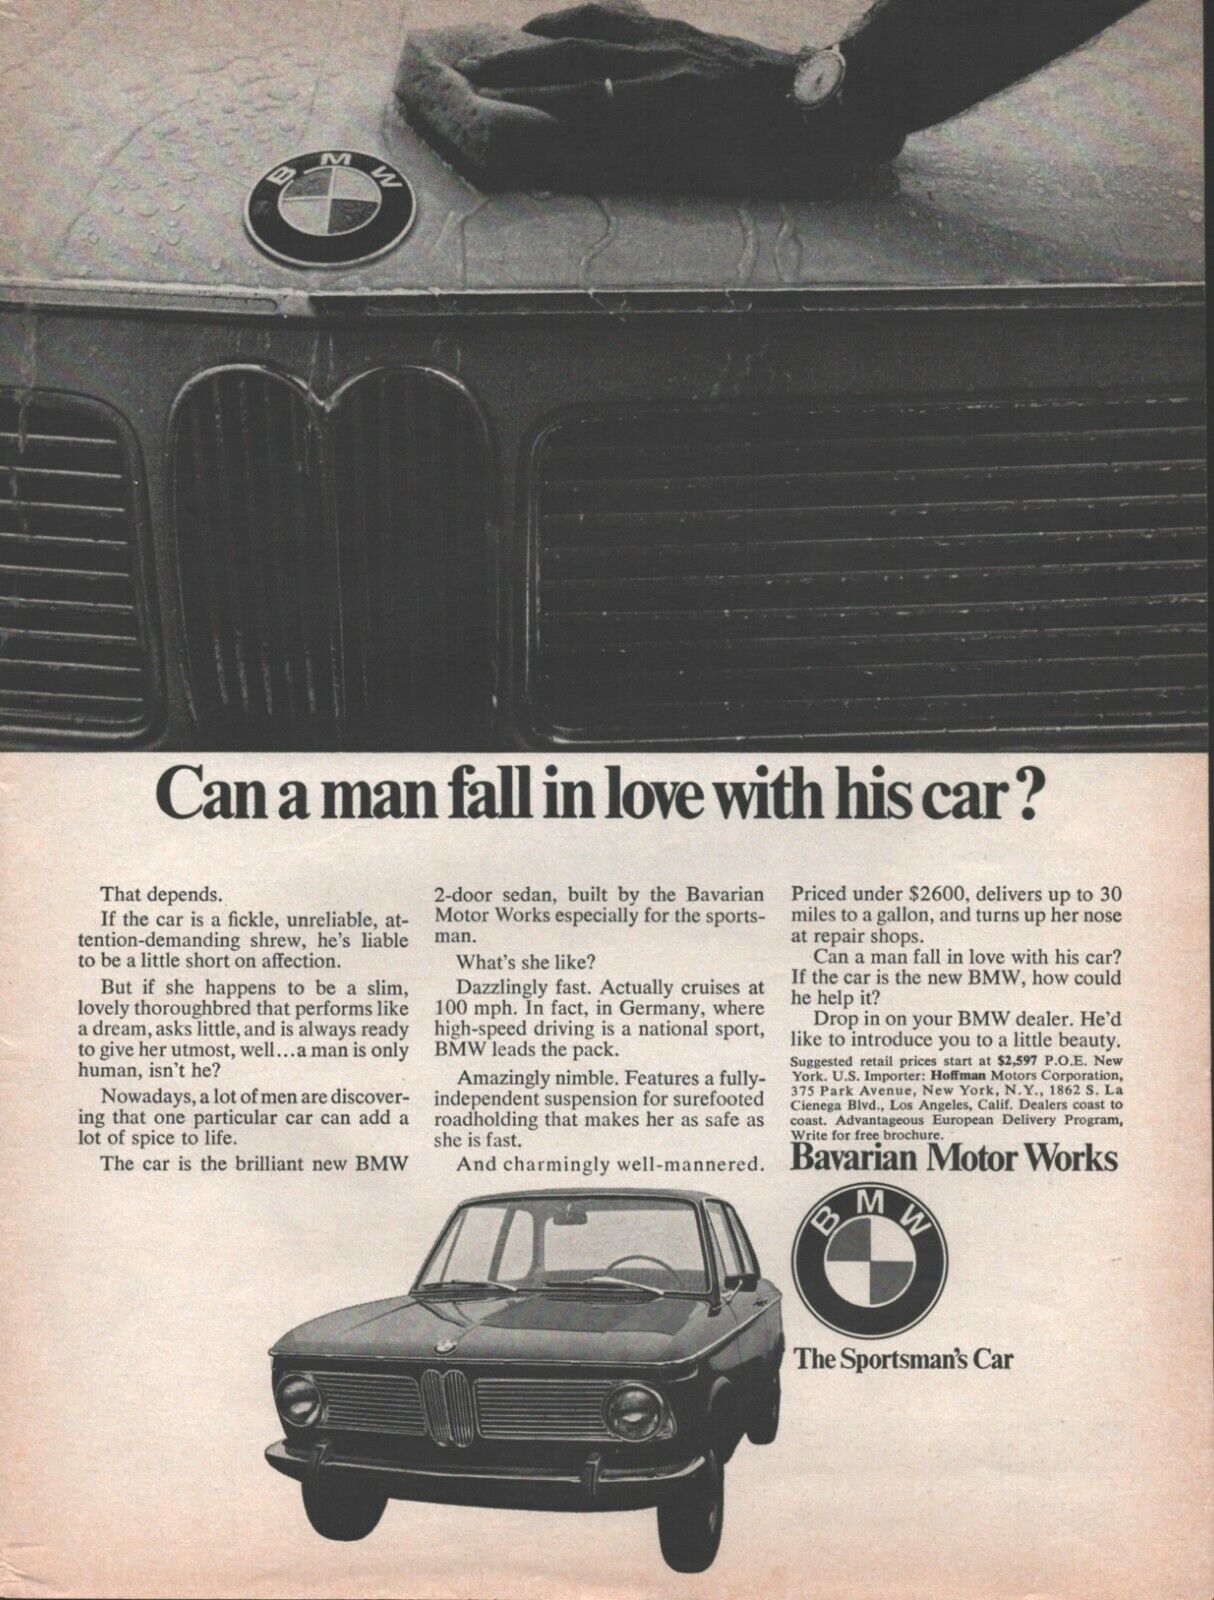 1968 BMW 2-Door Sedan Automobile - Vintage Car Ad